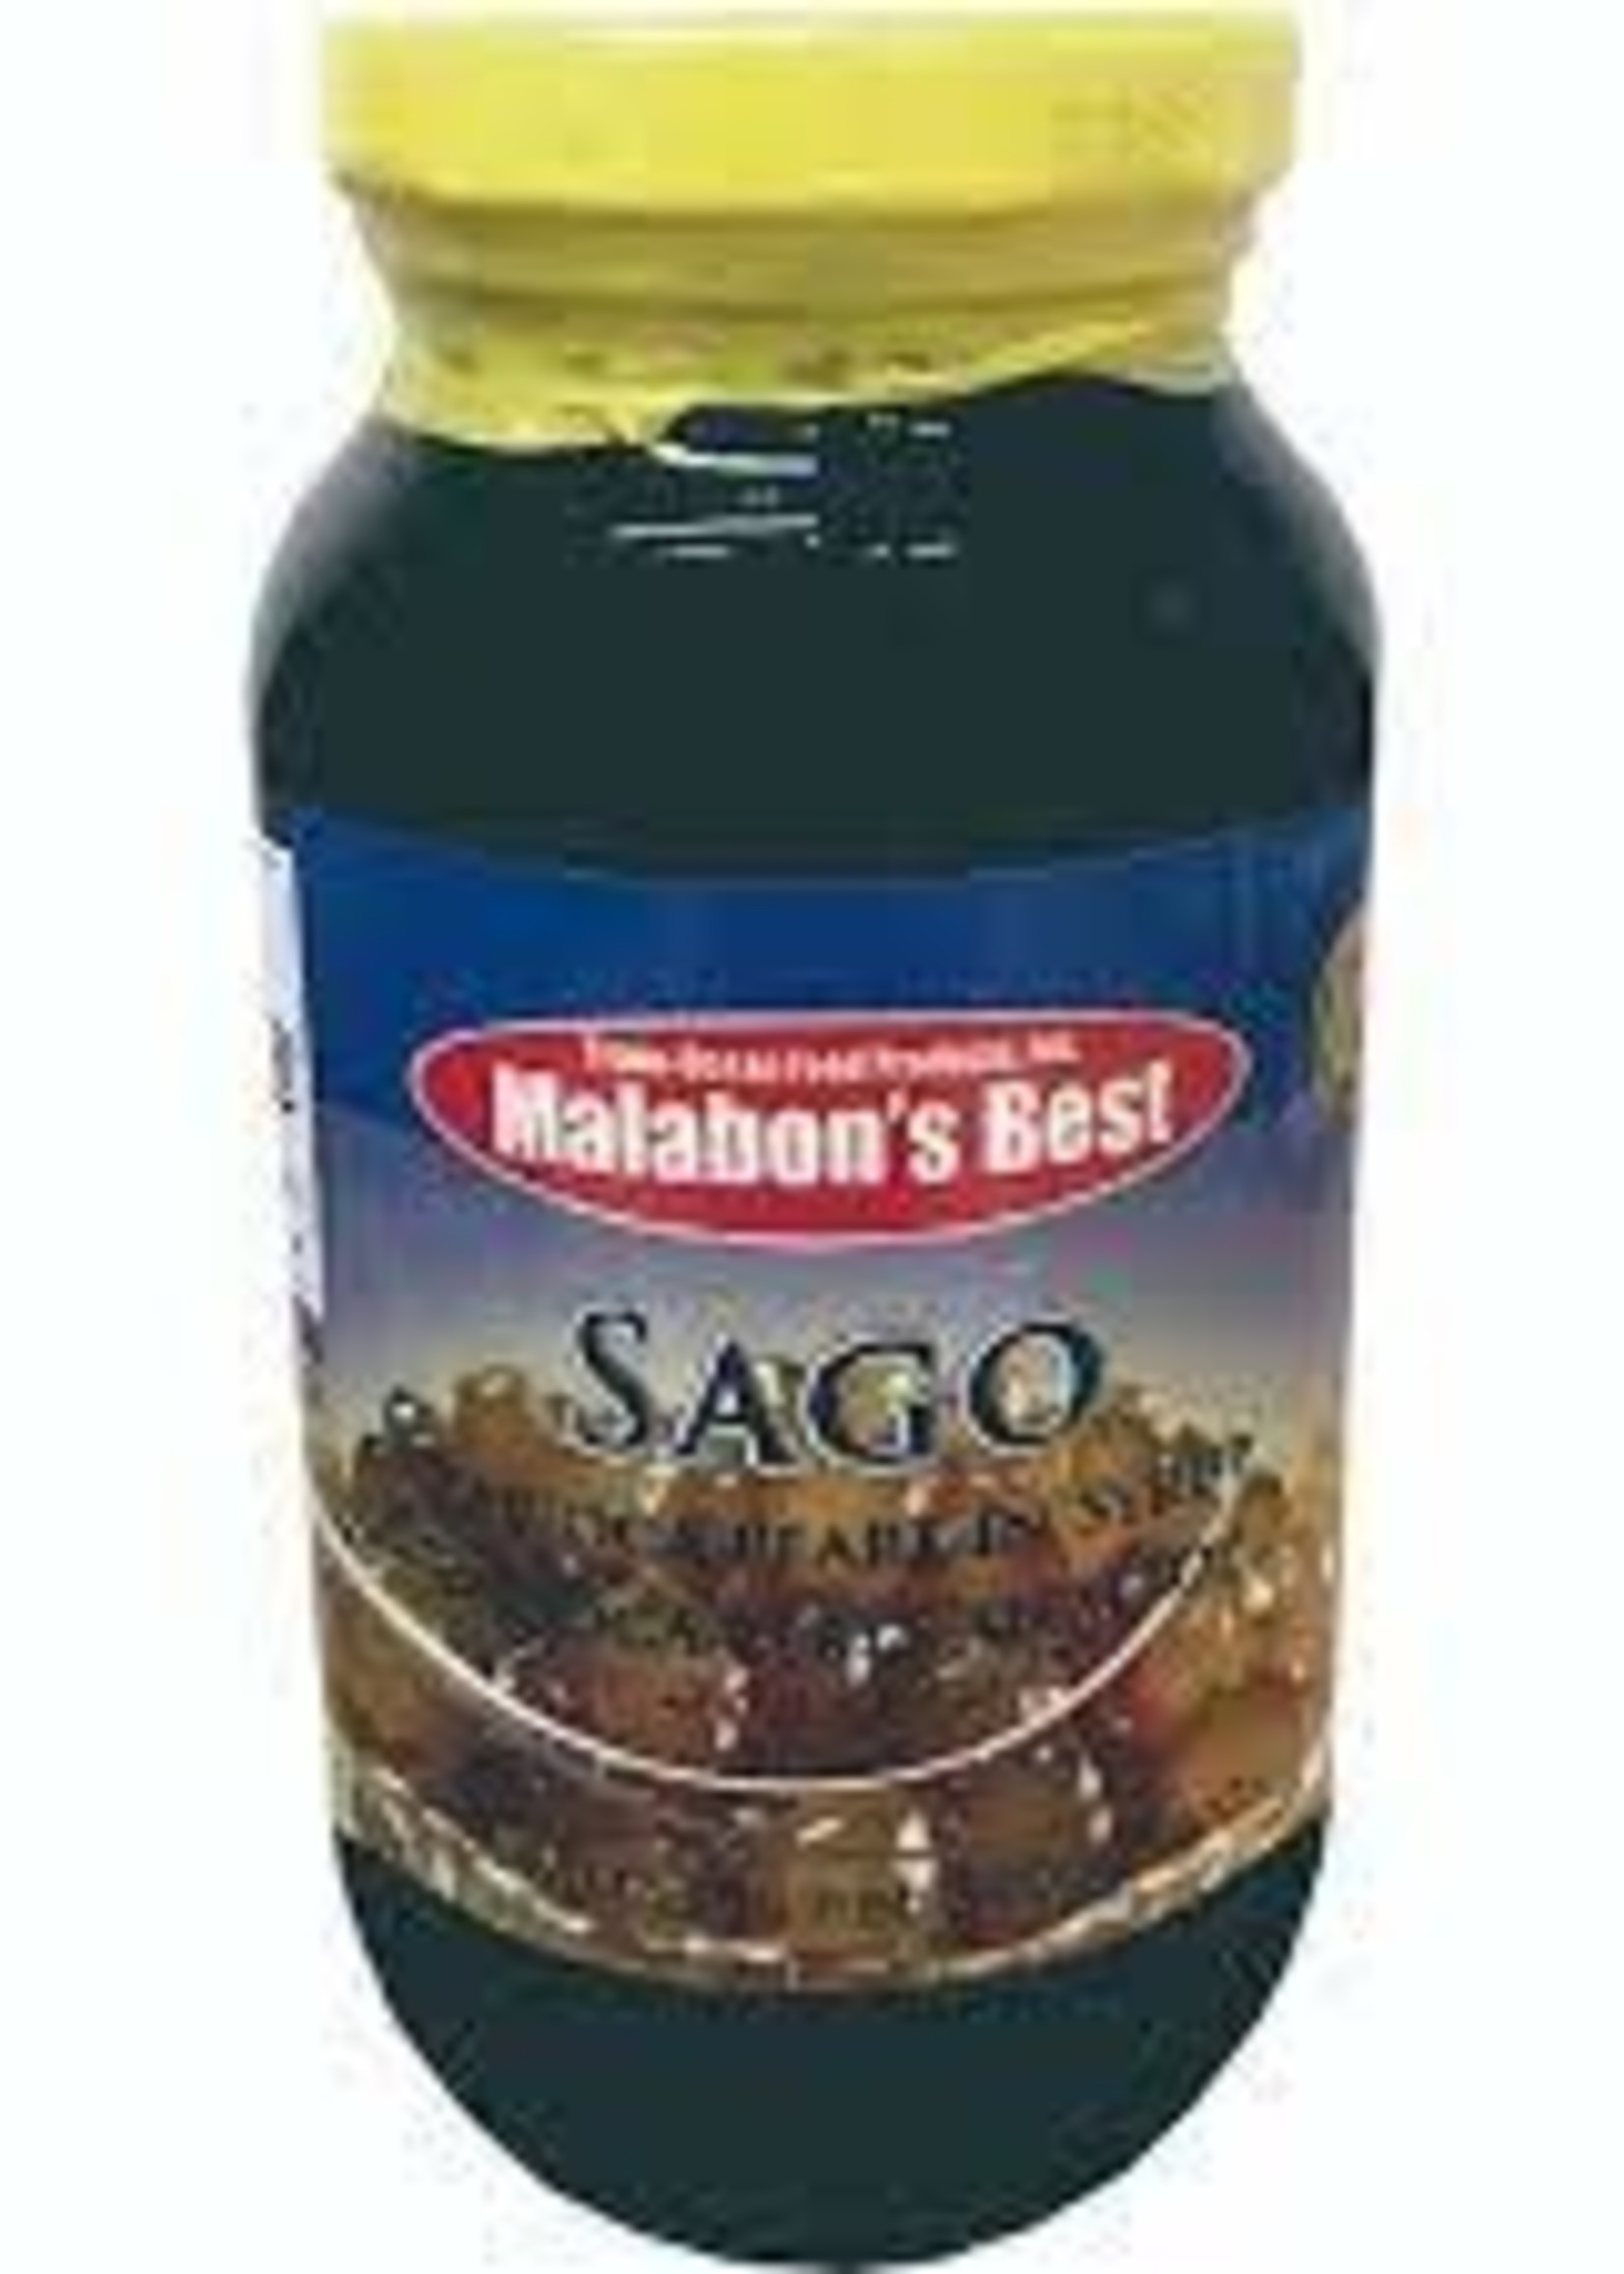 Malabon's Best Malabon's Best Tapioca In Syrup 340g